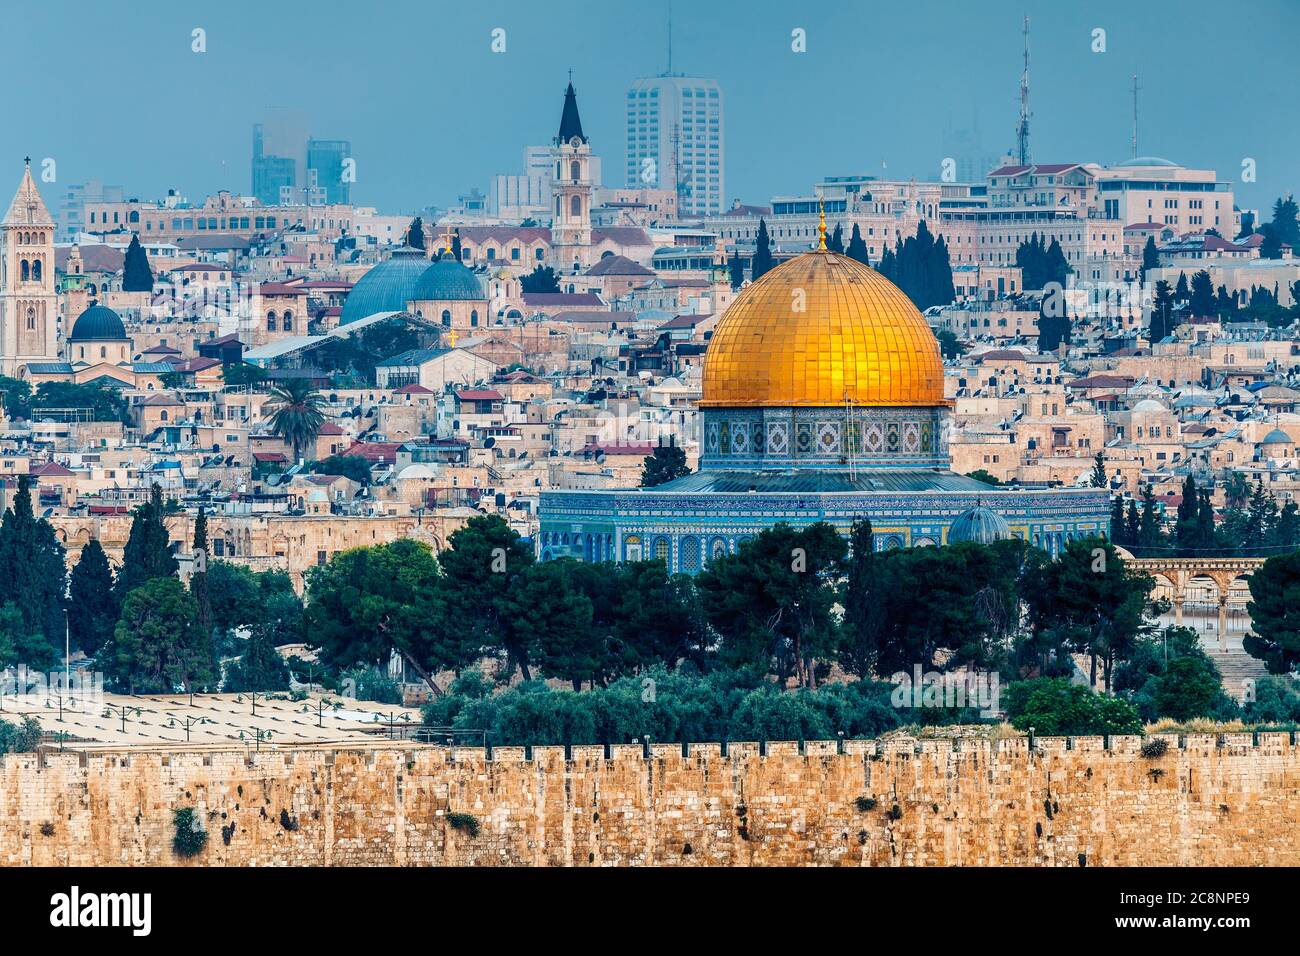 GERUSALEMME, ISRAELE - CIRCA MAGGIO 2018: Meraviglioso panorama della città di Gerusalemme intorno al 2018 maggio a Gerusalemme. Foto Stock